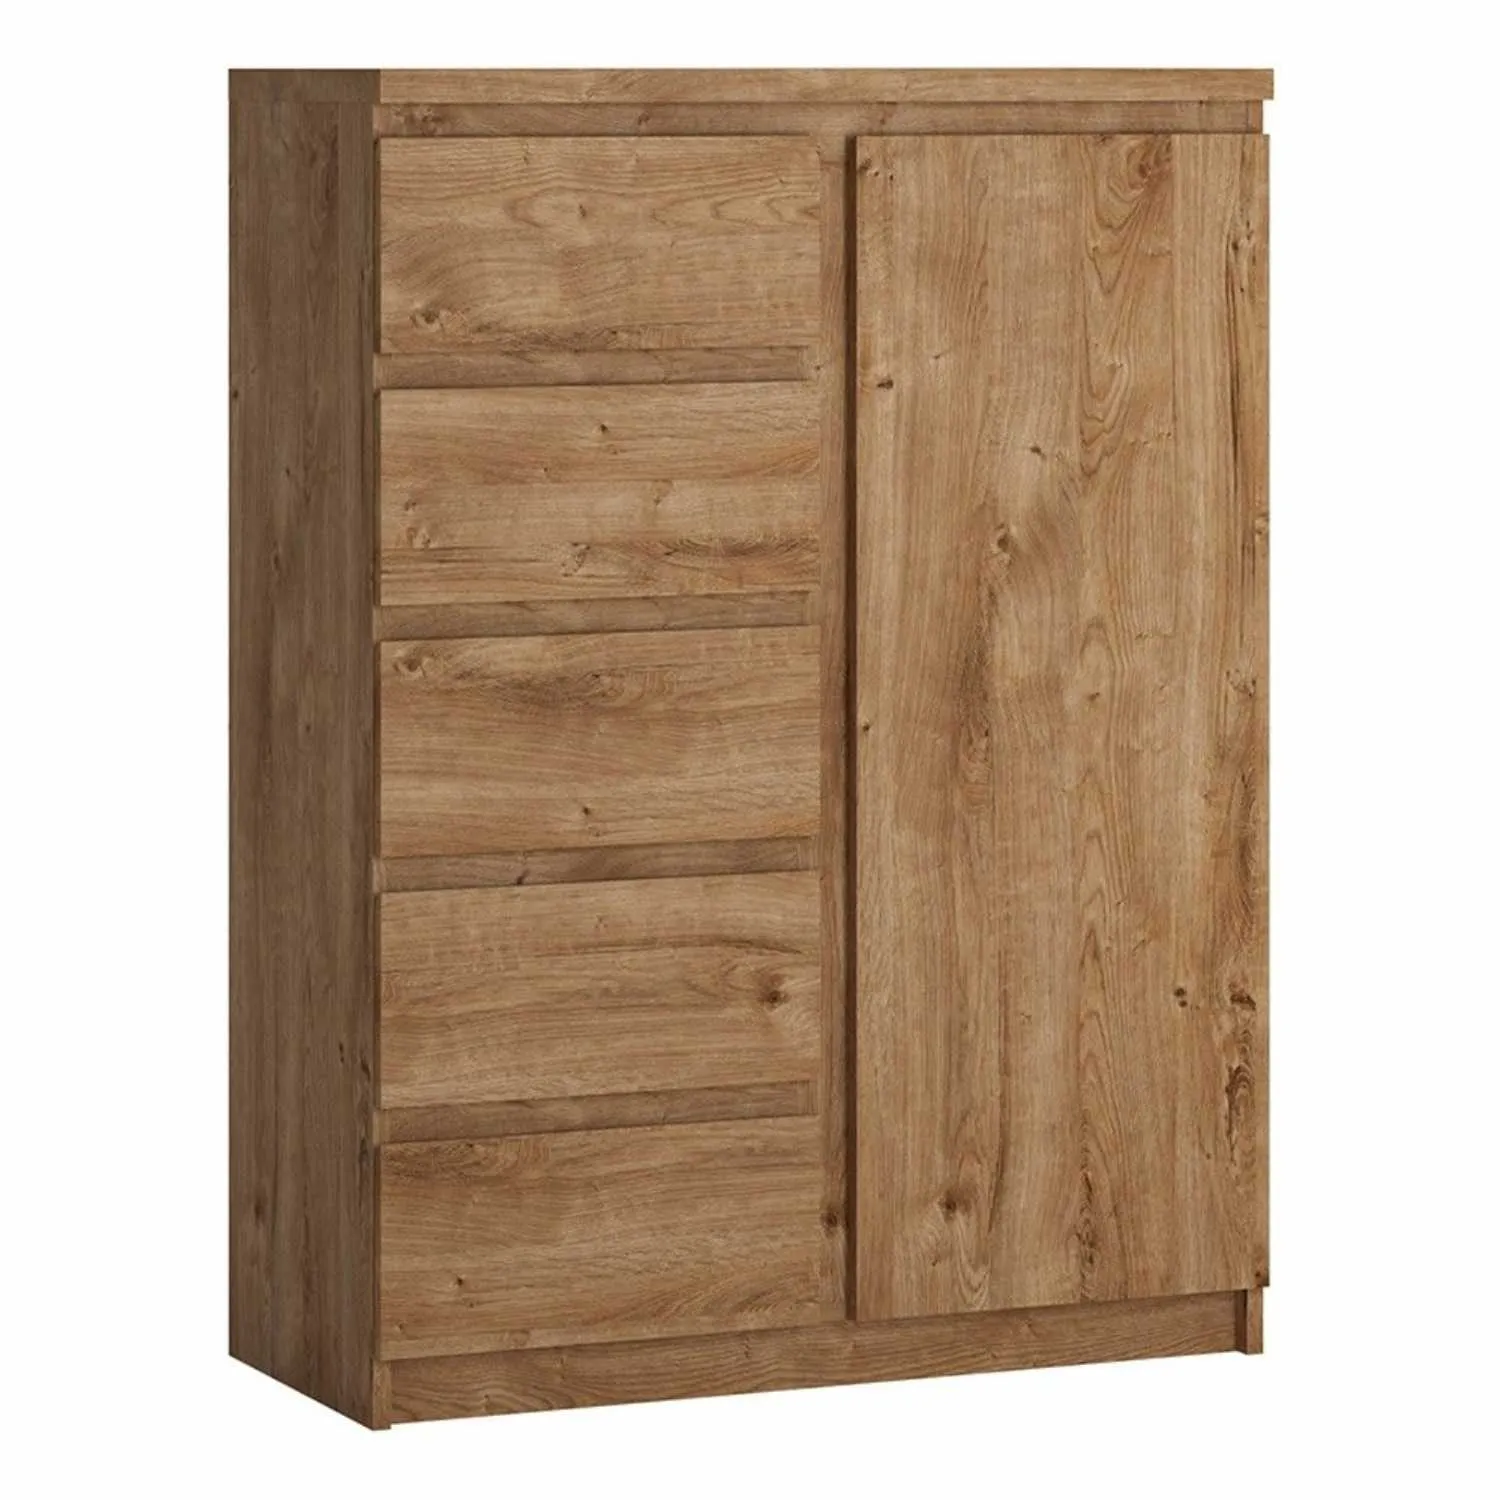 Fribo 1 door 5 drawer cabinet in Oak